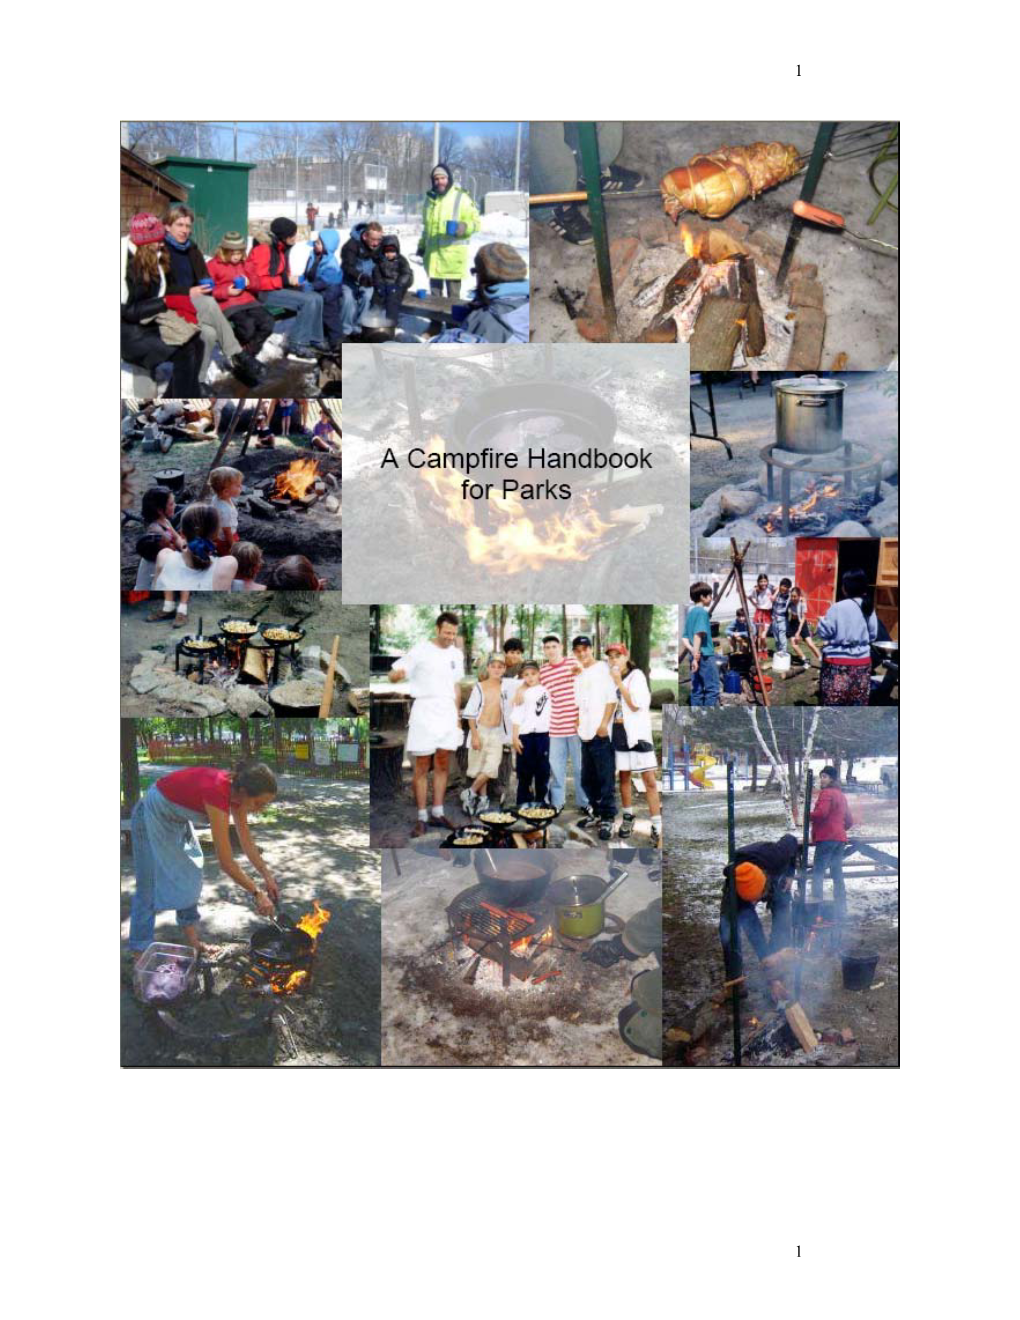 A Campfire Handbook for Parks